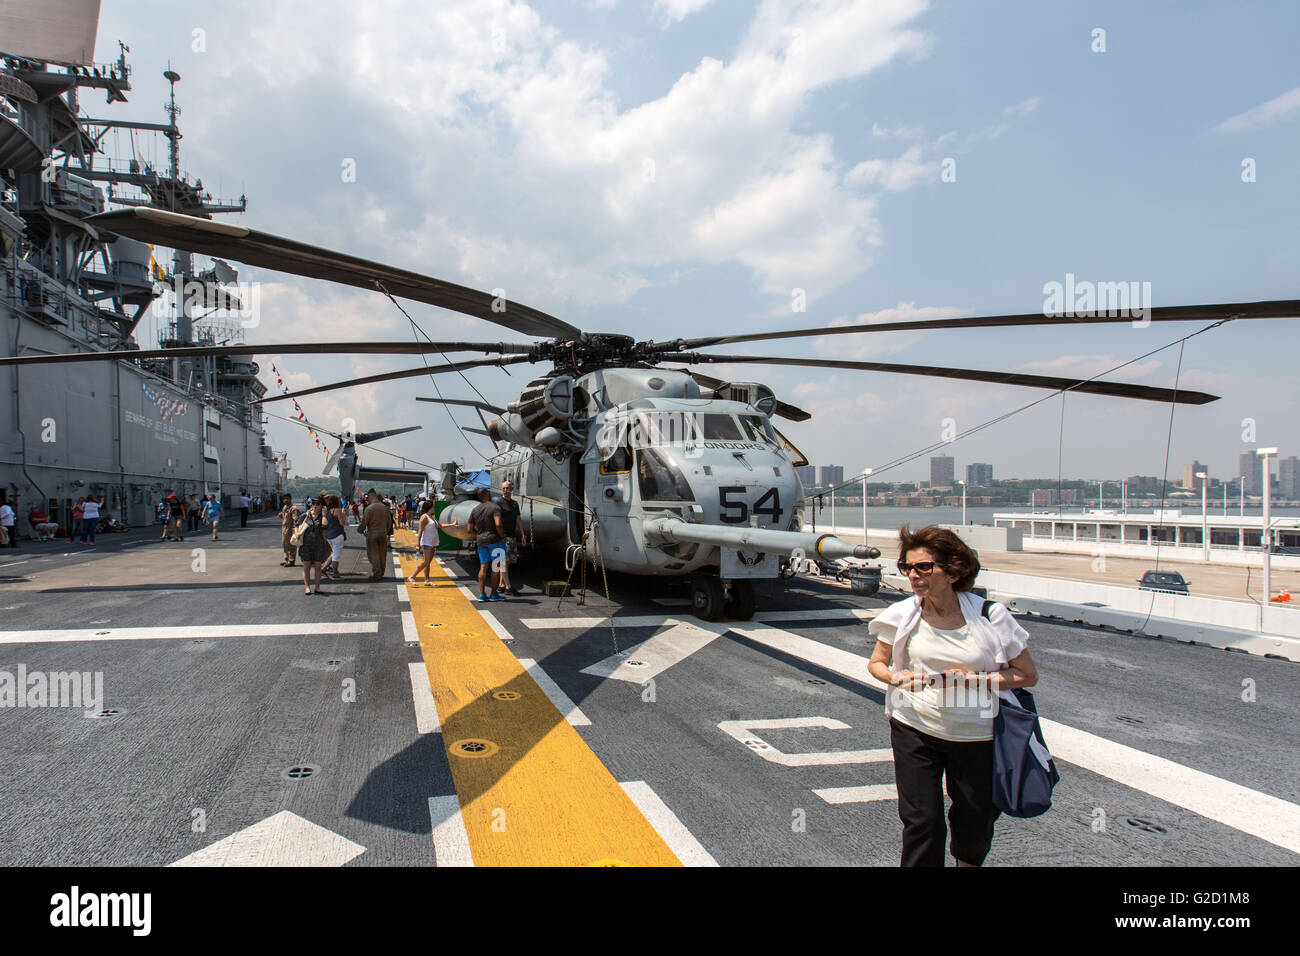 Nueva York, Estados Unidos. 27 de mayo de 2016. Nueva York, Nueva York flota Anual Semana en Nueva York. 27 de mayo de 2016. Un Sikorsky tipo CH-53E Super Stallion es retratada en helicóptero a bordo del USS Bataan (LHD-5), Avispa clase de buque de asalto anfibio, durante la 28ª Semana Anual de la flota de Nueva York, en Nueva York, Estados Unidos el 27 de mayo de 2016. En Nueva York la Semana de la flota tiene lugar a partir del 25 de mayo al 30 de mayo, donde centenares de hombres y mujeres en las Fuerzas Armadas, visita a la ciudad de Nueva York como parte de las conmemoraciones del Día Conmemorativo. Crédito: Li Muzi/Xinhua/Alamy Live News Foto de stock